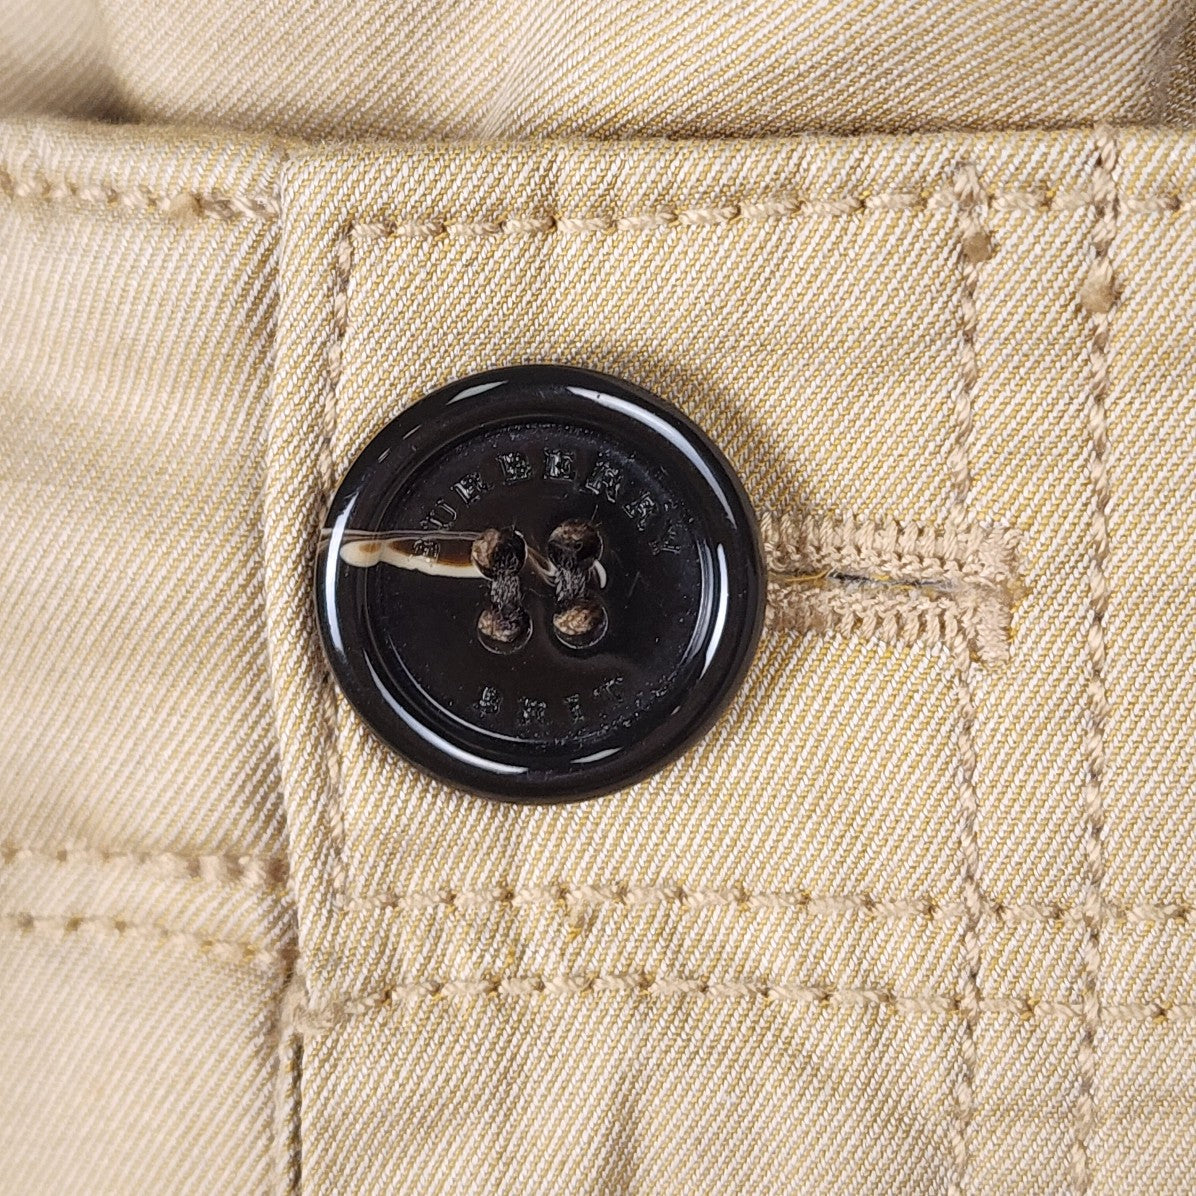 Burberry Brit Beige Cotton Khaki Pants Size 8